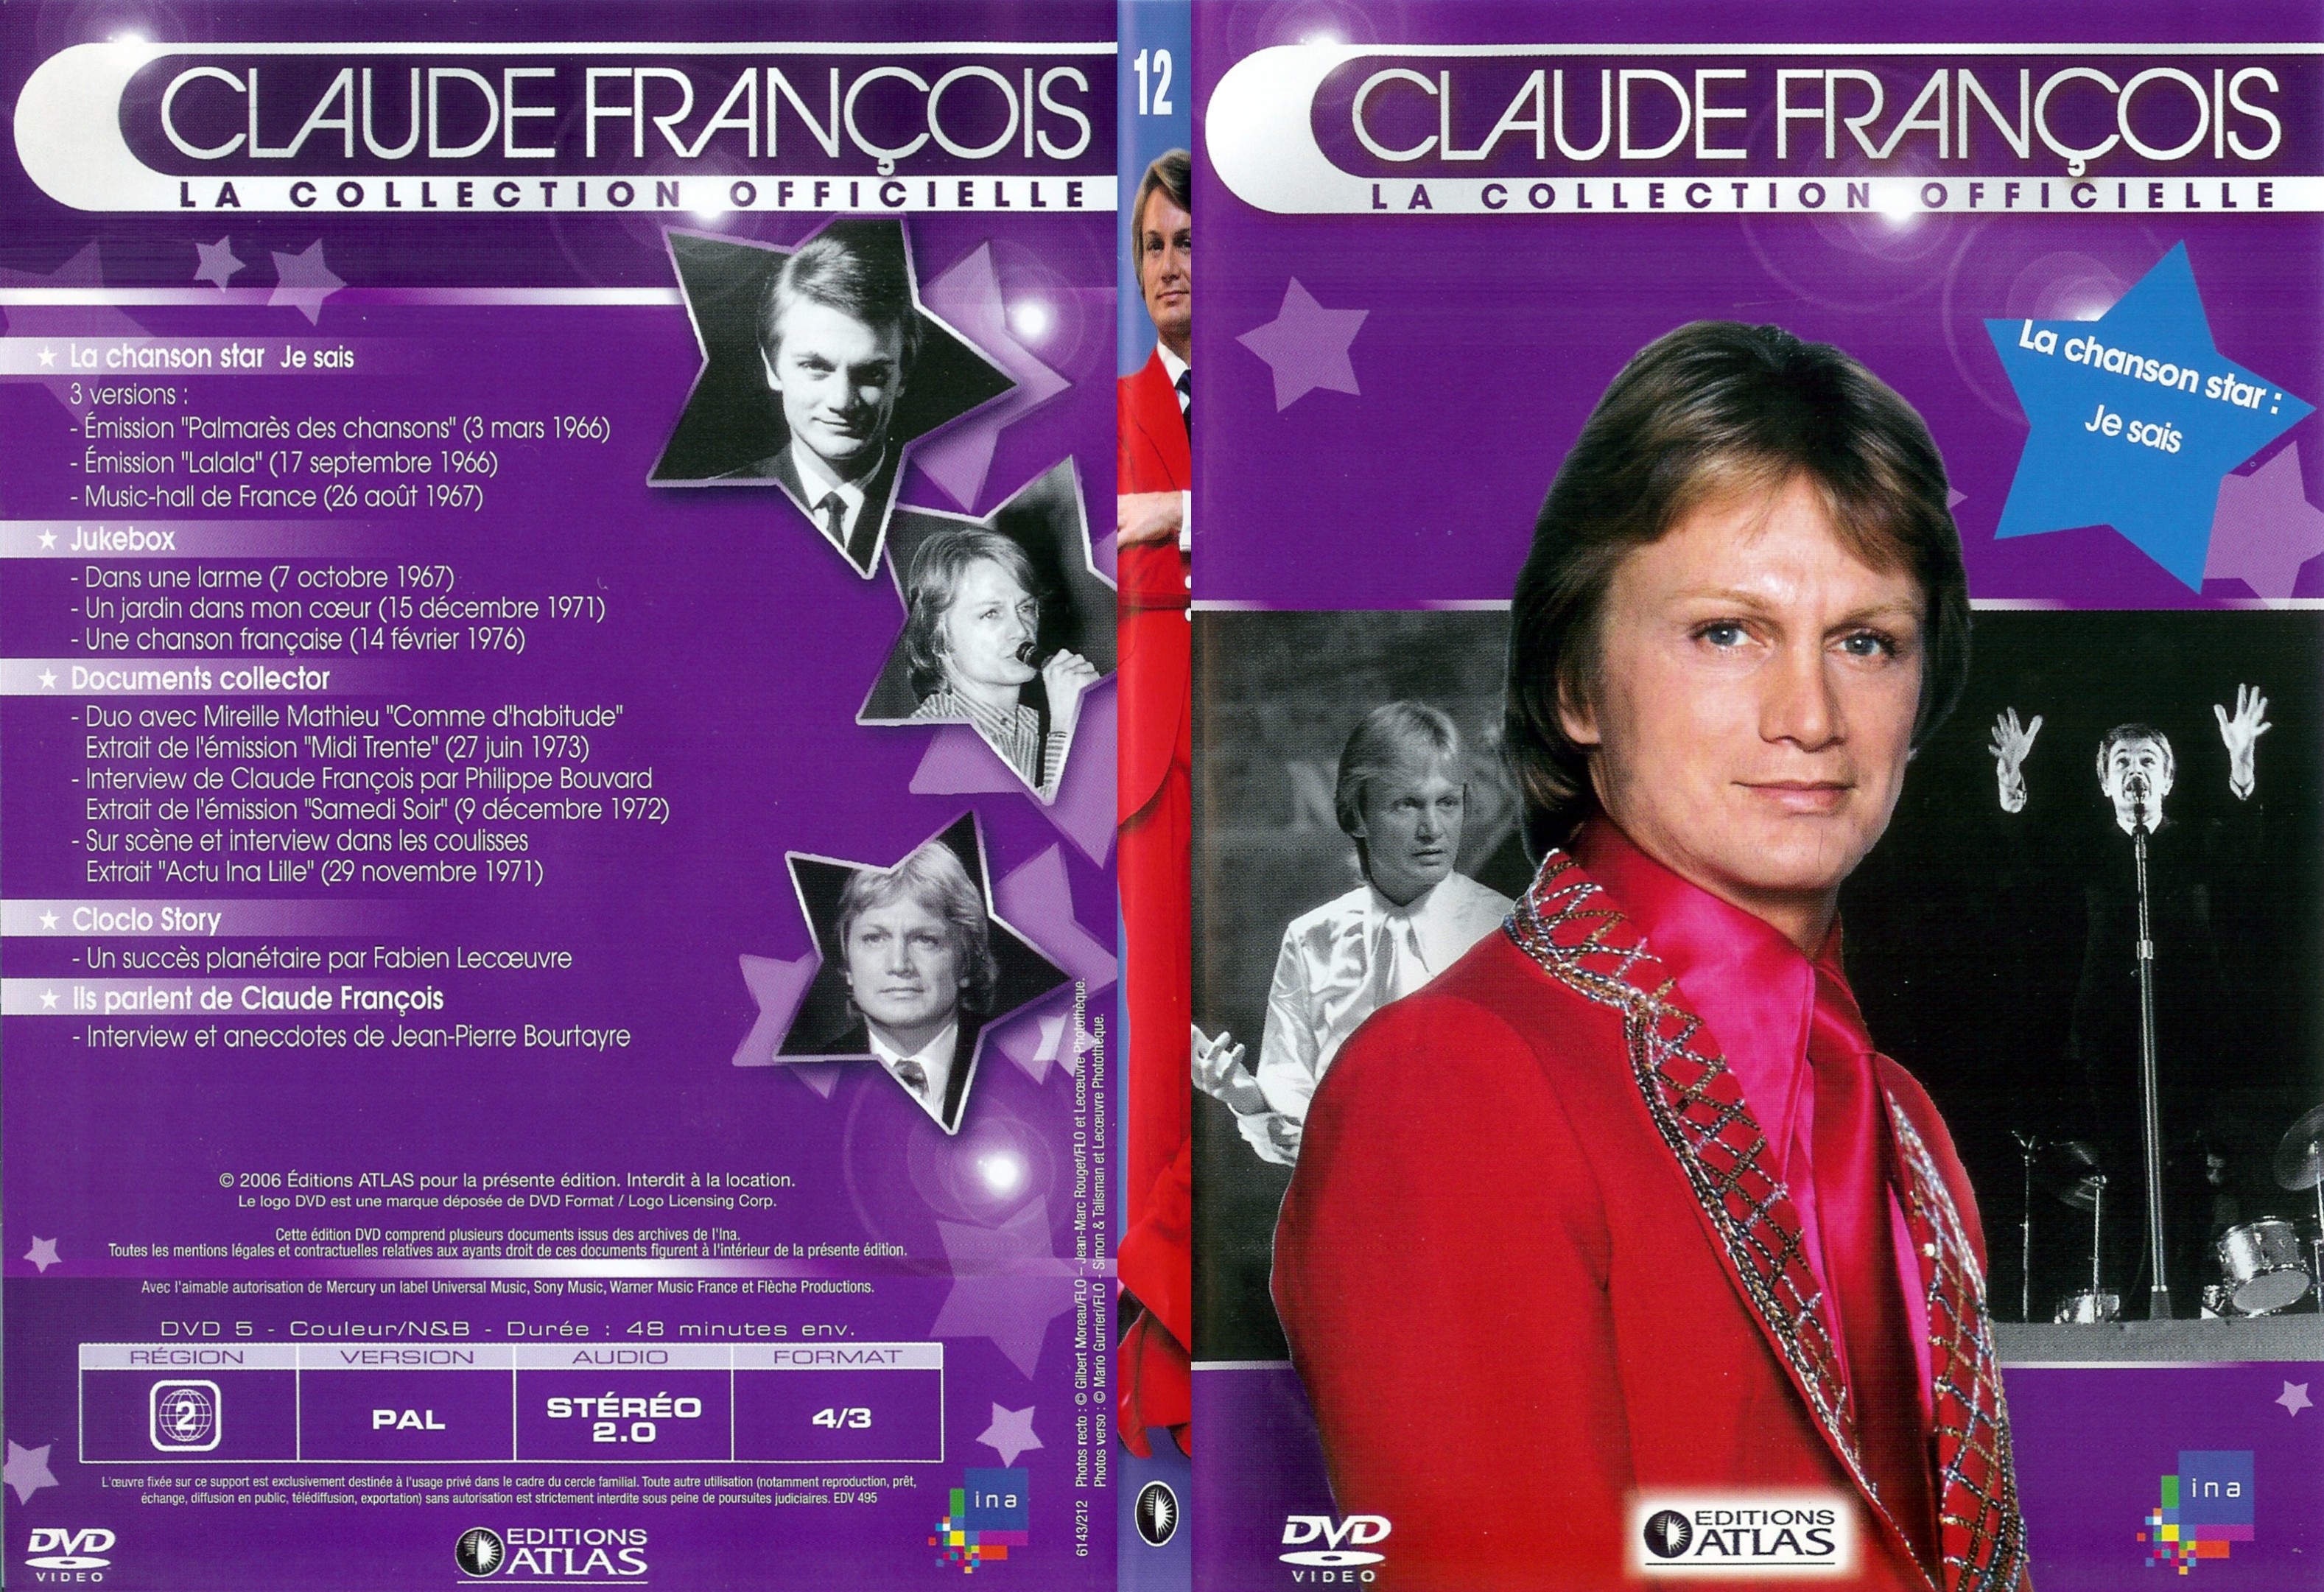 Jaquette DVD Claude francois le collection officielle vol 12 - SLIM